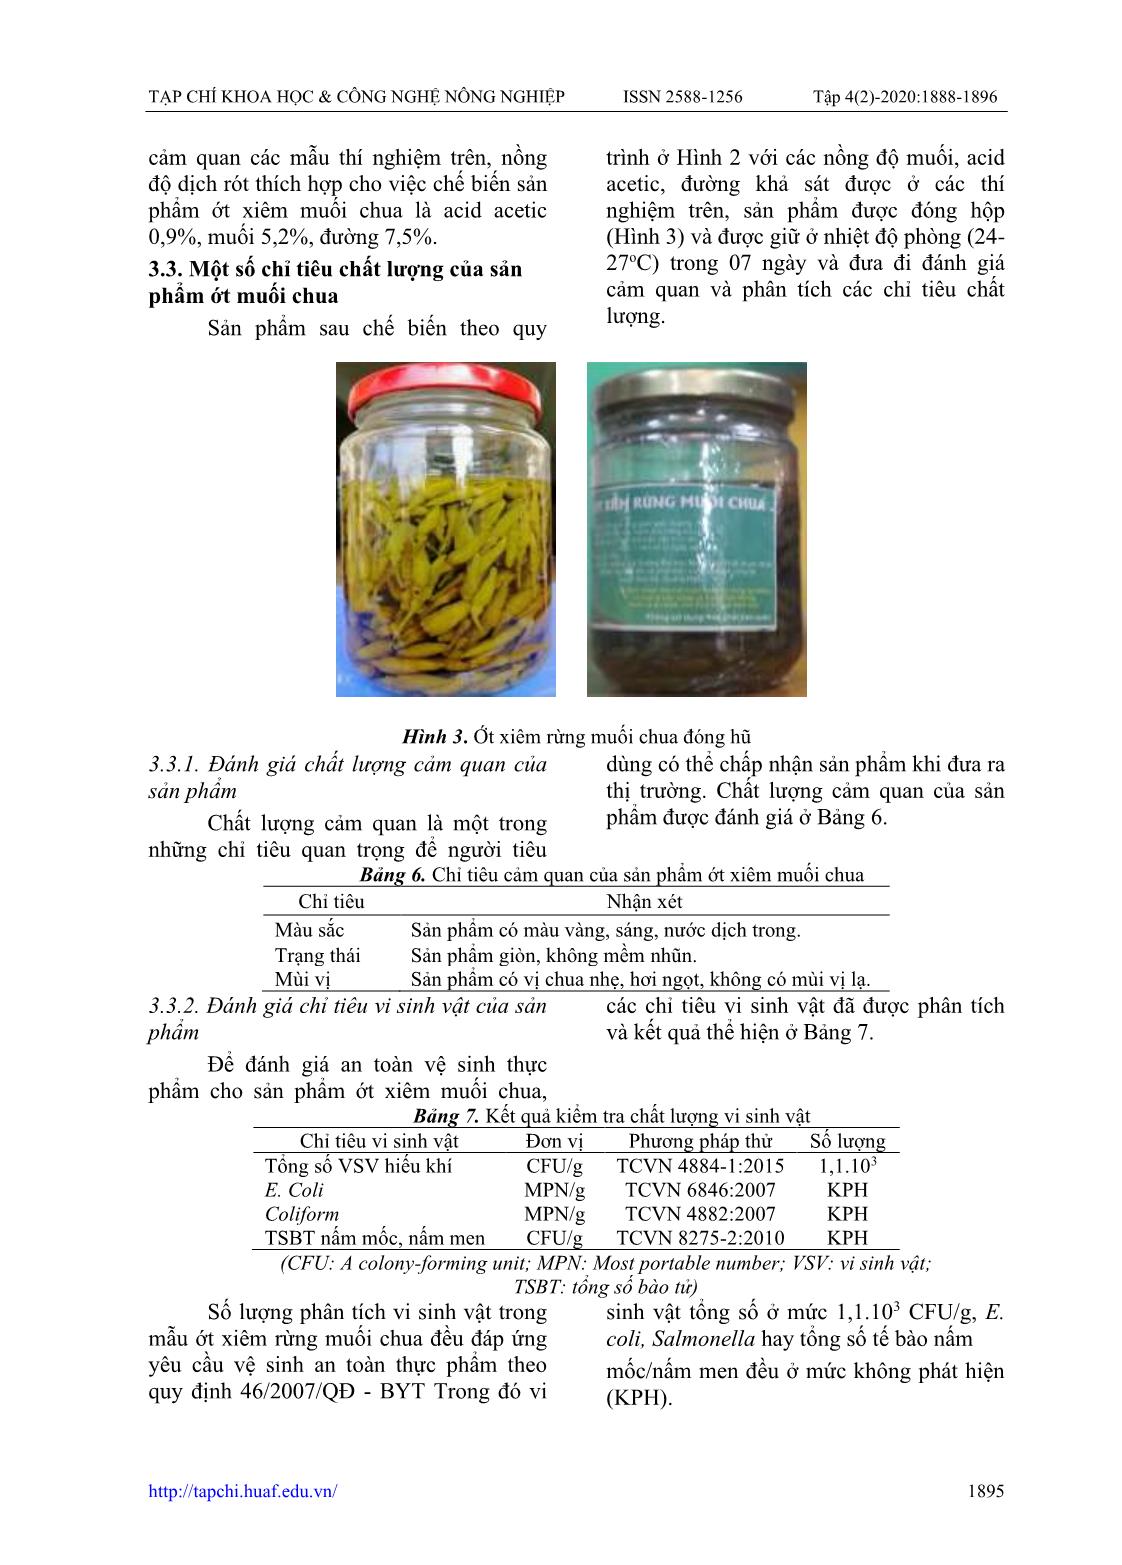 Nghiên cứu ảnh hưởng của thành phần dịch rót đến một số chỉ tiêu chất lượng sản phẩm ớt xiêm (Capsicum spp.) rừng muối chua trang 8